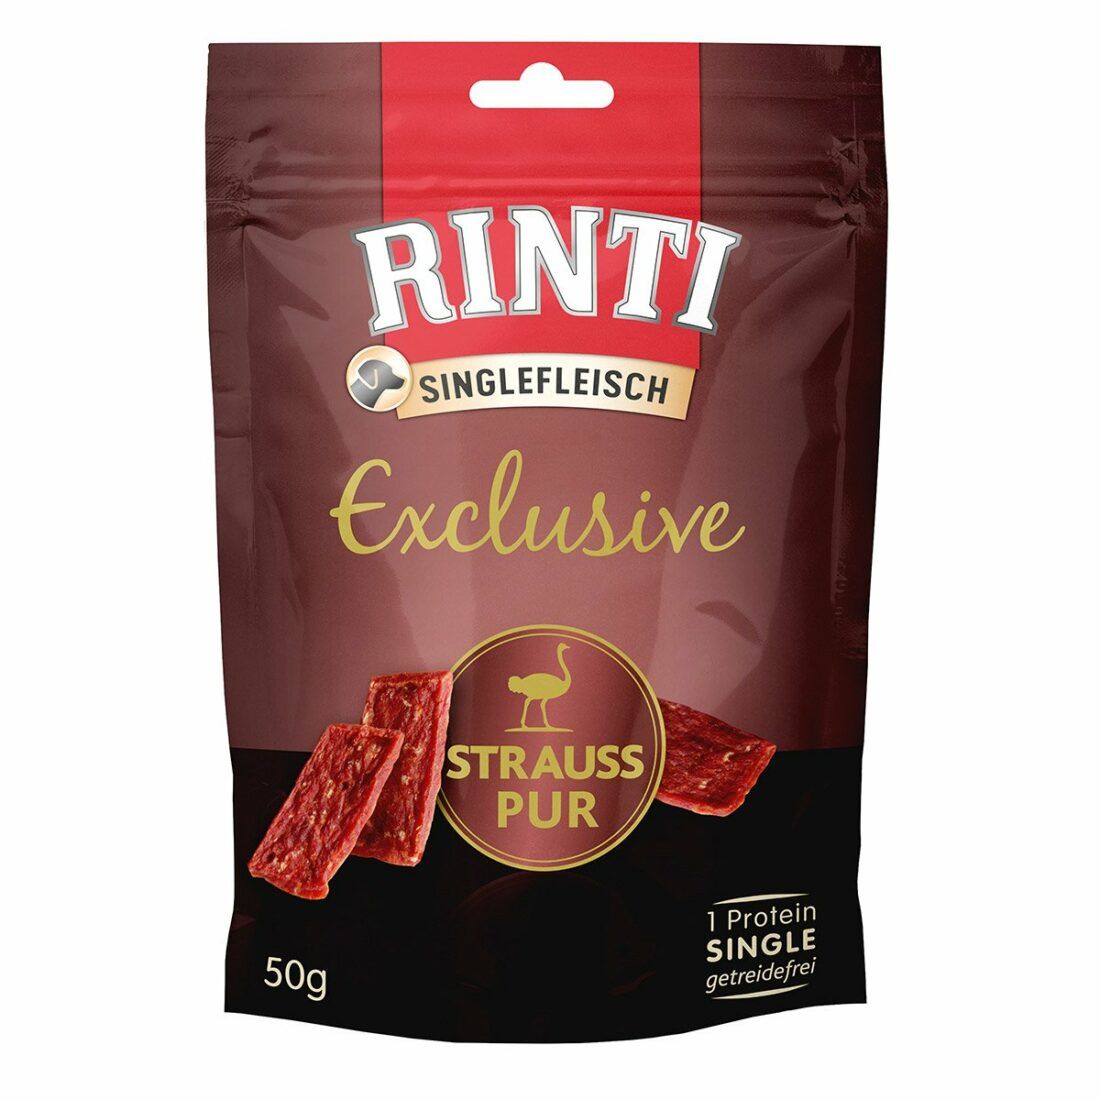 Rinti Singlefleisch Exclusive Snack